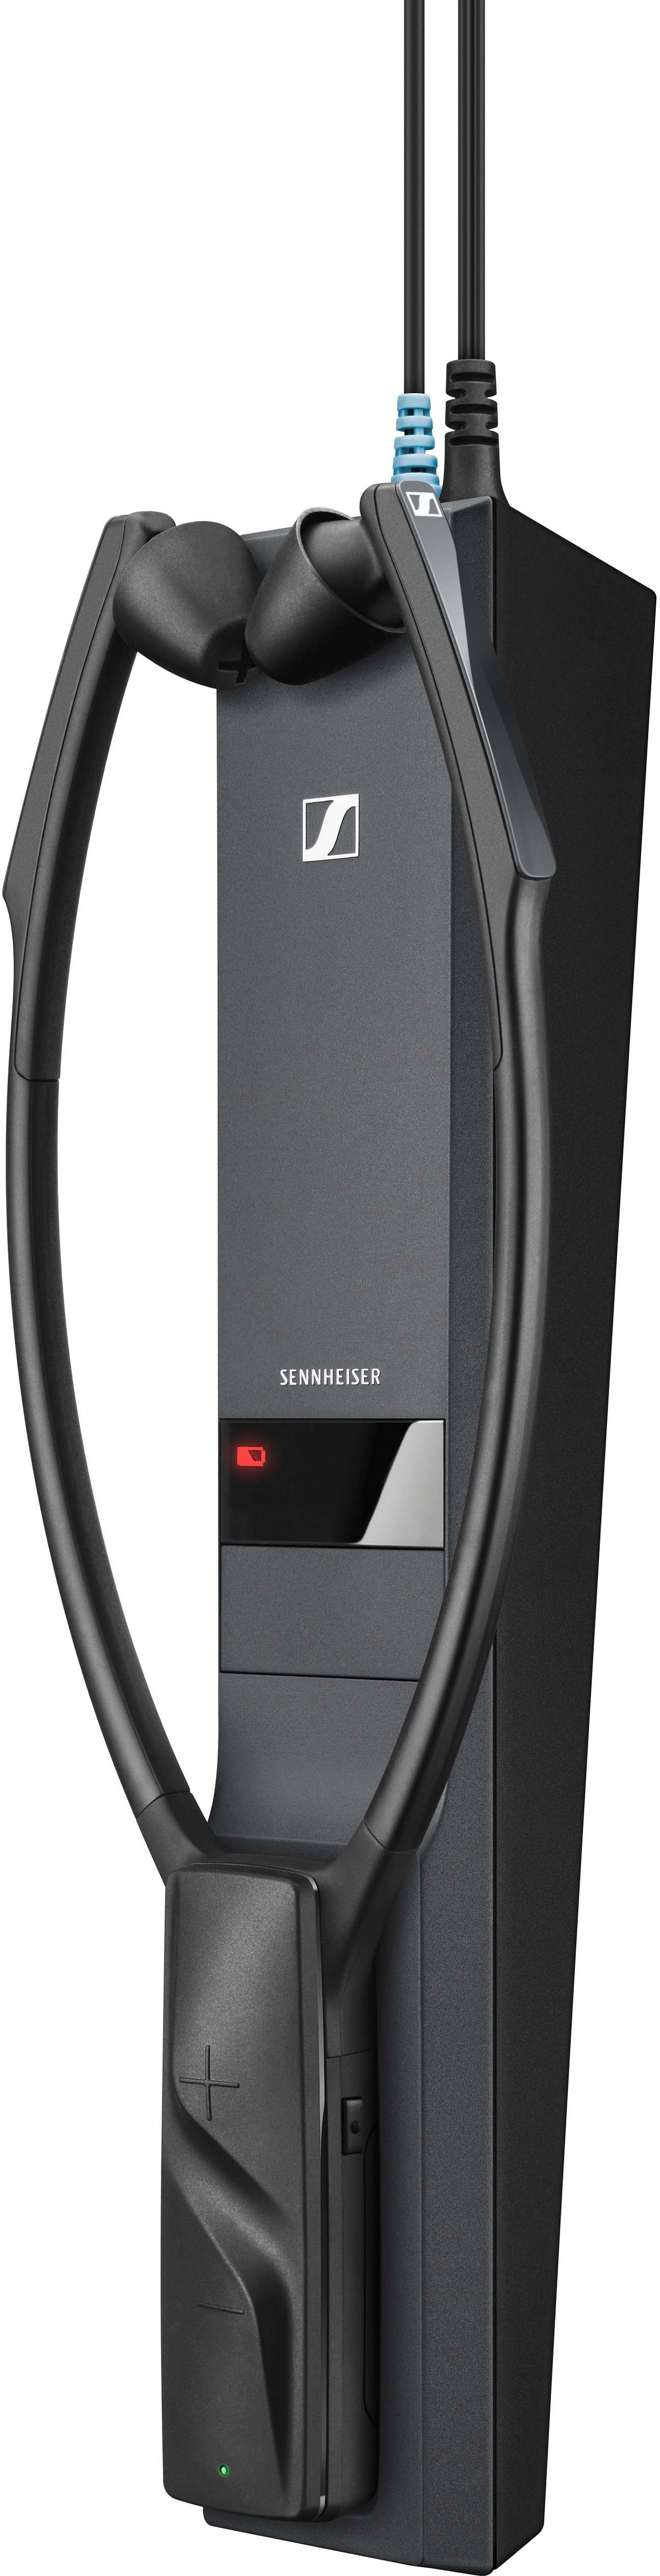 Left View: Sennheiser - RS 2000 Digital Wireless Headphone for TV Listening - Black